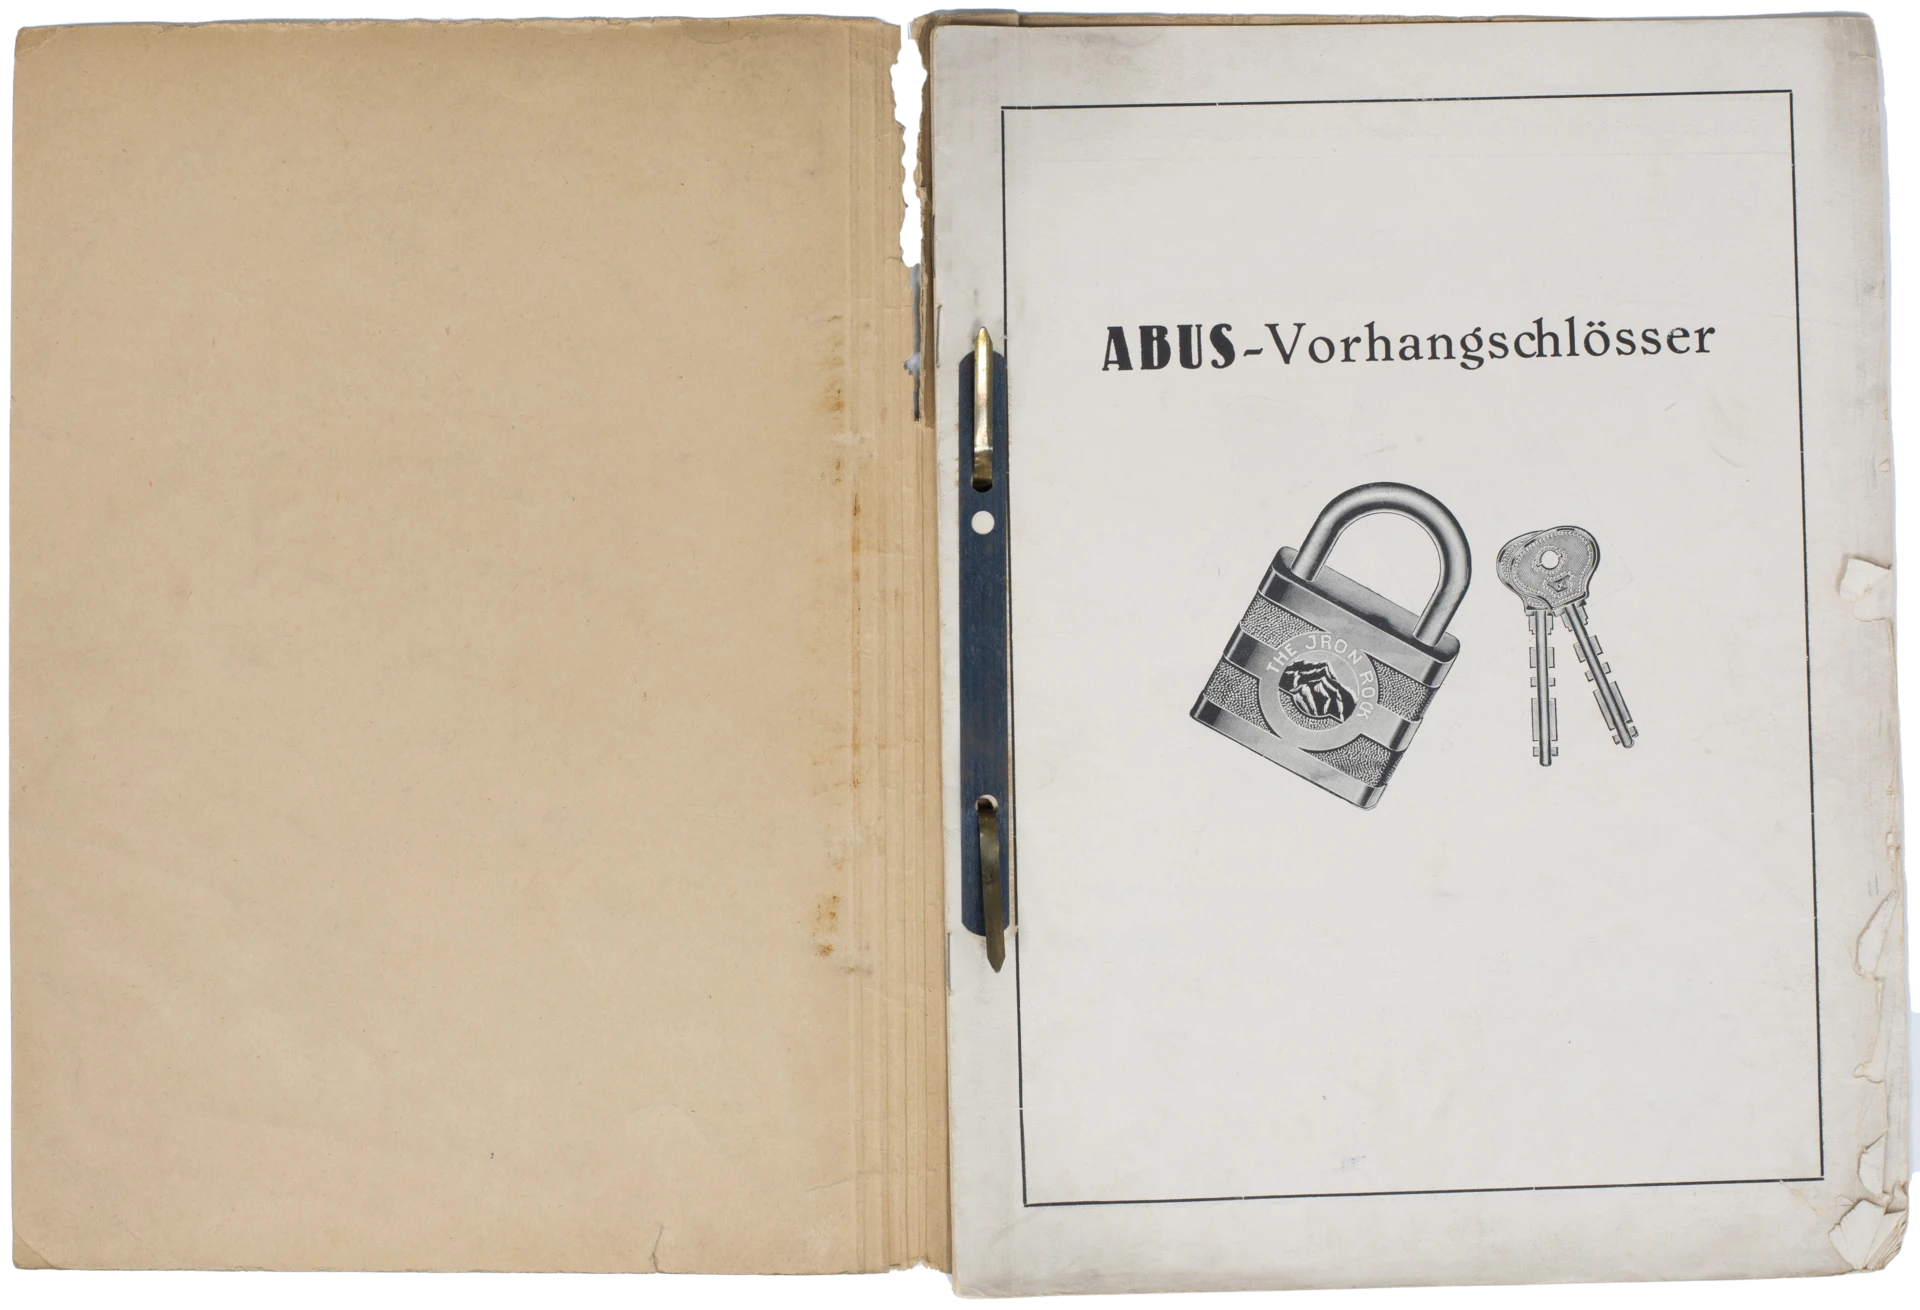 Un raccoglitore aperto con un frontespizio su cui sono illustrati un lucchetto e un paio di chiavi, con la scritta "ABUS-Vorhängeschlösser" (Lucchetti ABUS) © ABUS